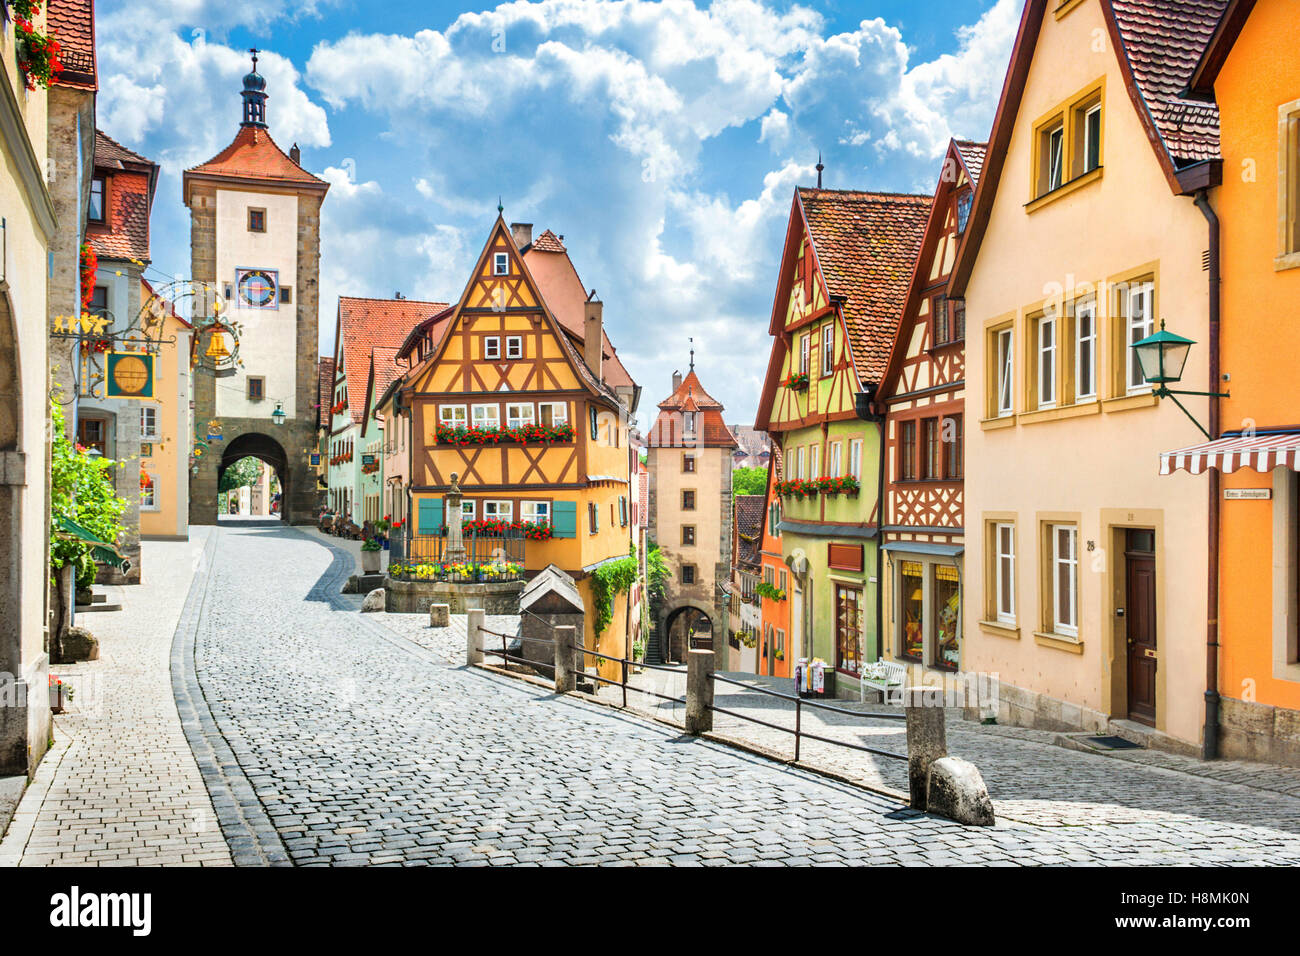 Klassische Postkartenblick auf die historische Stadt Rothenburg Ob der Tauber an einem sonnigen Tag mit blauem Himmel, Franken, Bayern, Deutschland Stockfoto